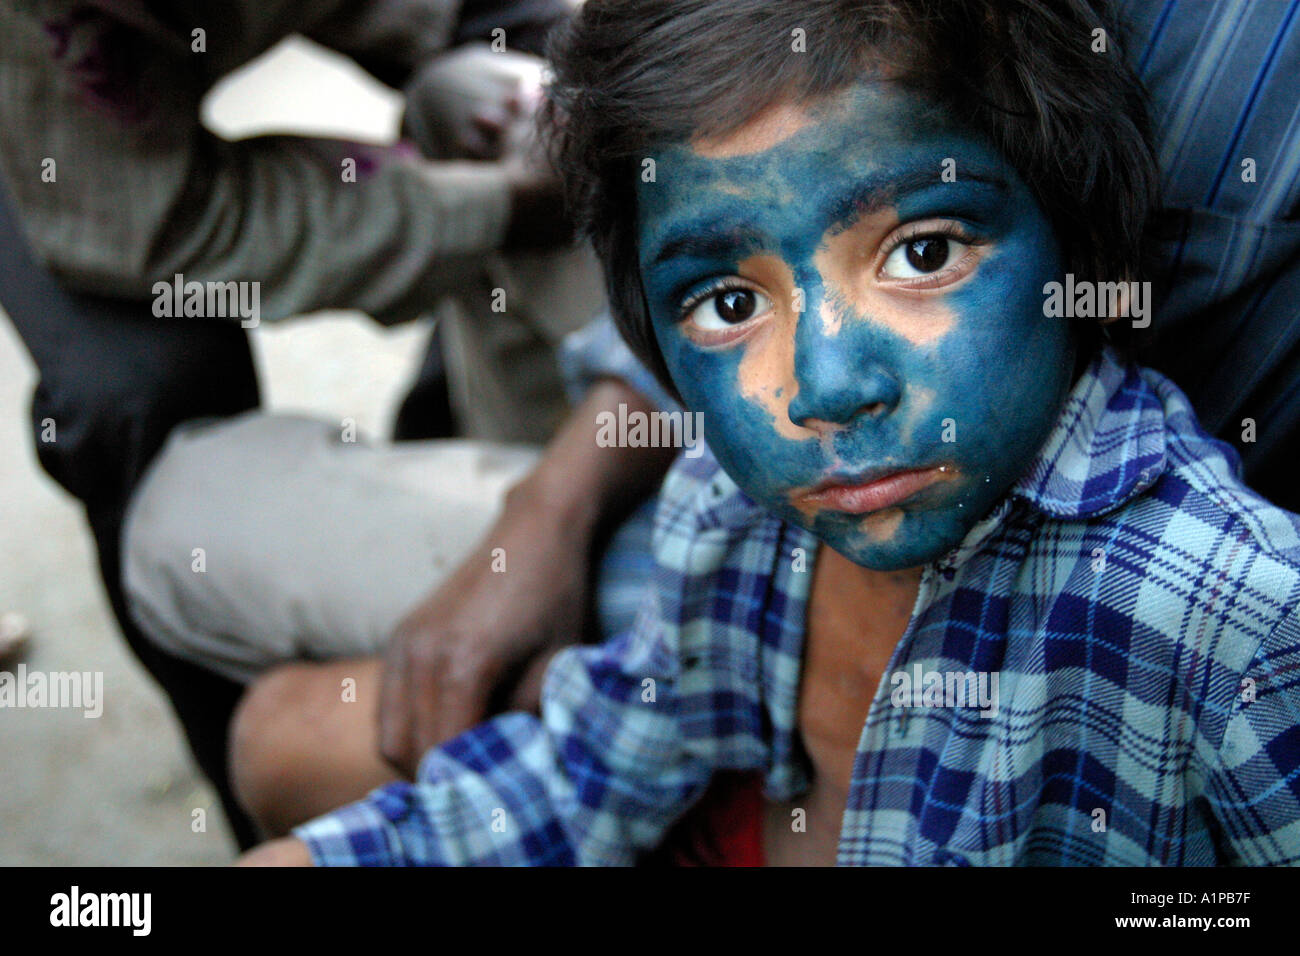 Les Indiens de l'Inde Asie asian girl young female portrait visage couleur couleur bleu poudre festival holi jeu jouer Banque D'Images